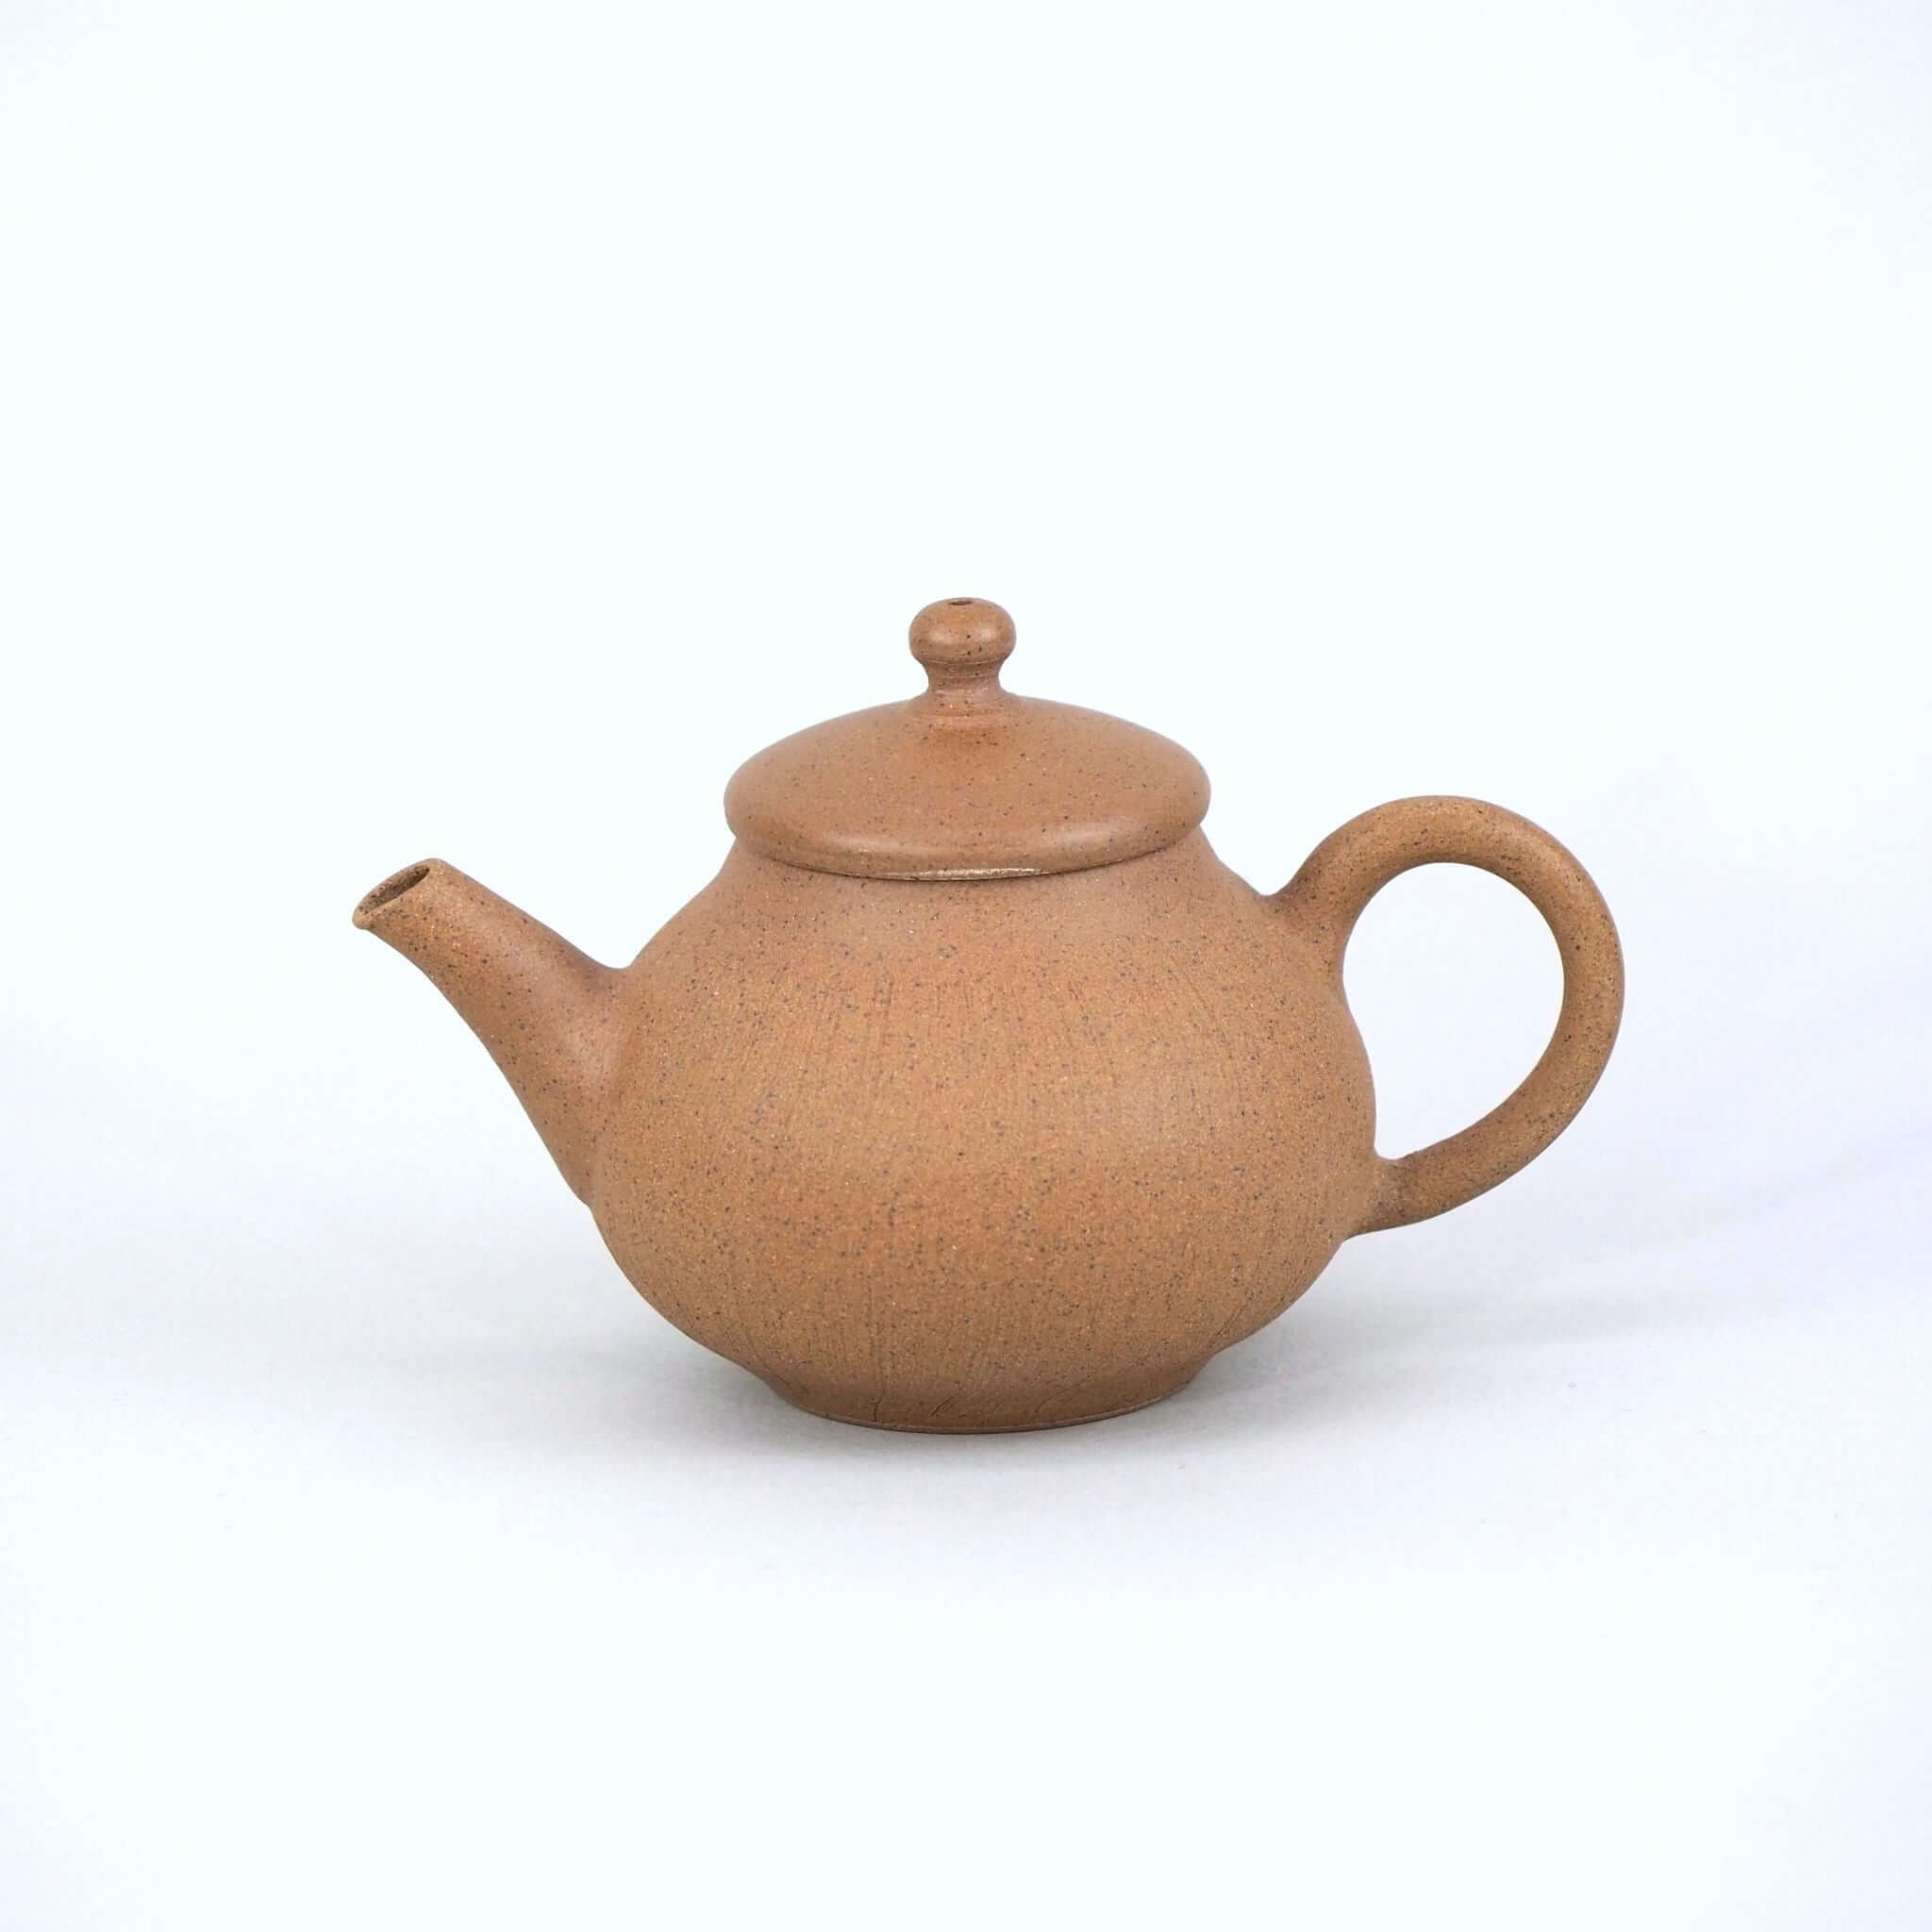 茶焼き締め茶壺 中国茶・台湾茶向け茶器 – 煎茶 中国茶 台湾茶向け 